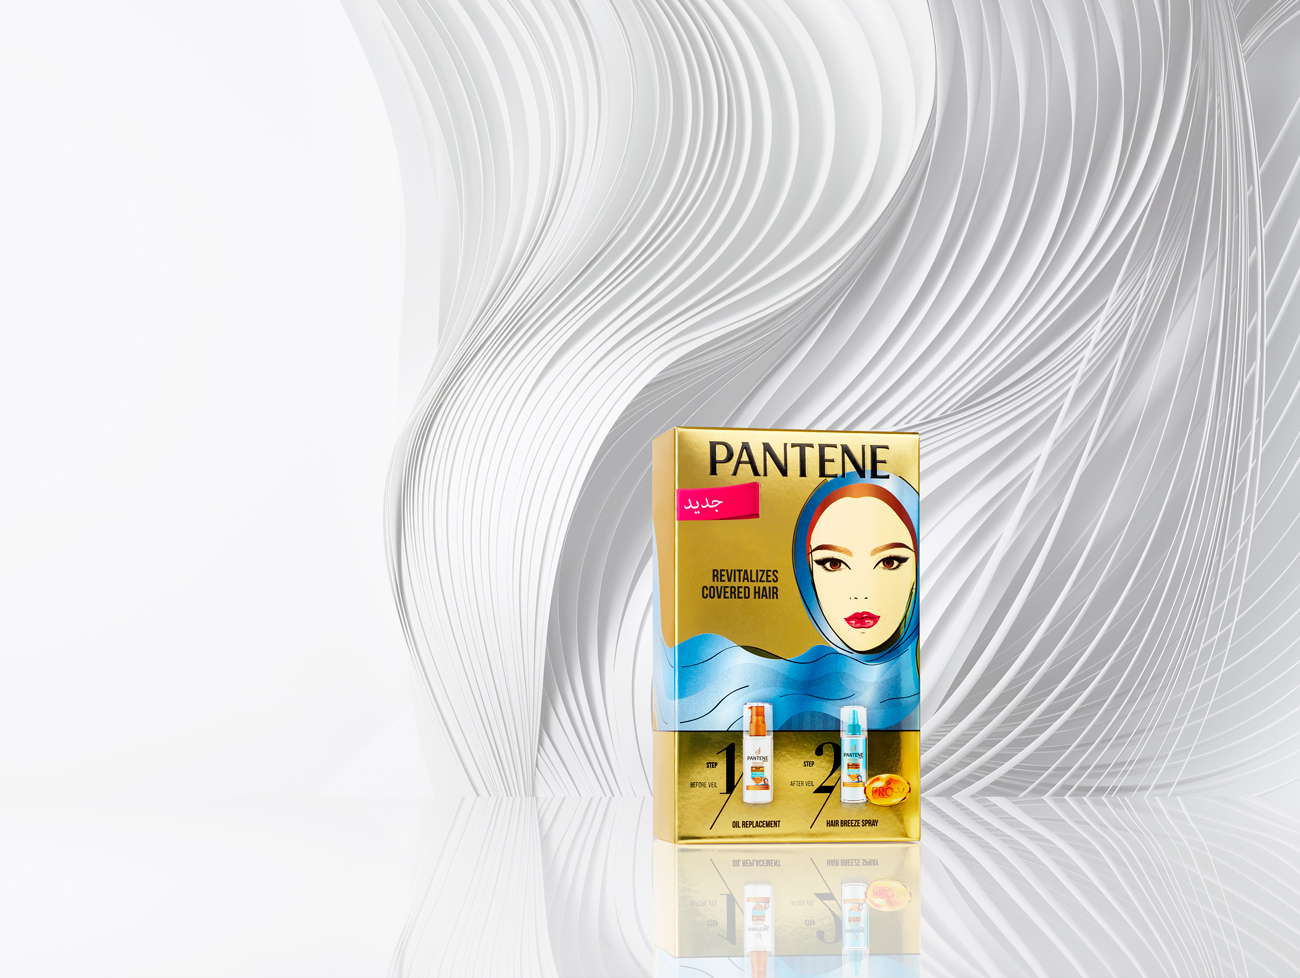 Pantene studio design Maud Vantours paper art paper design Paris